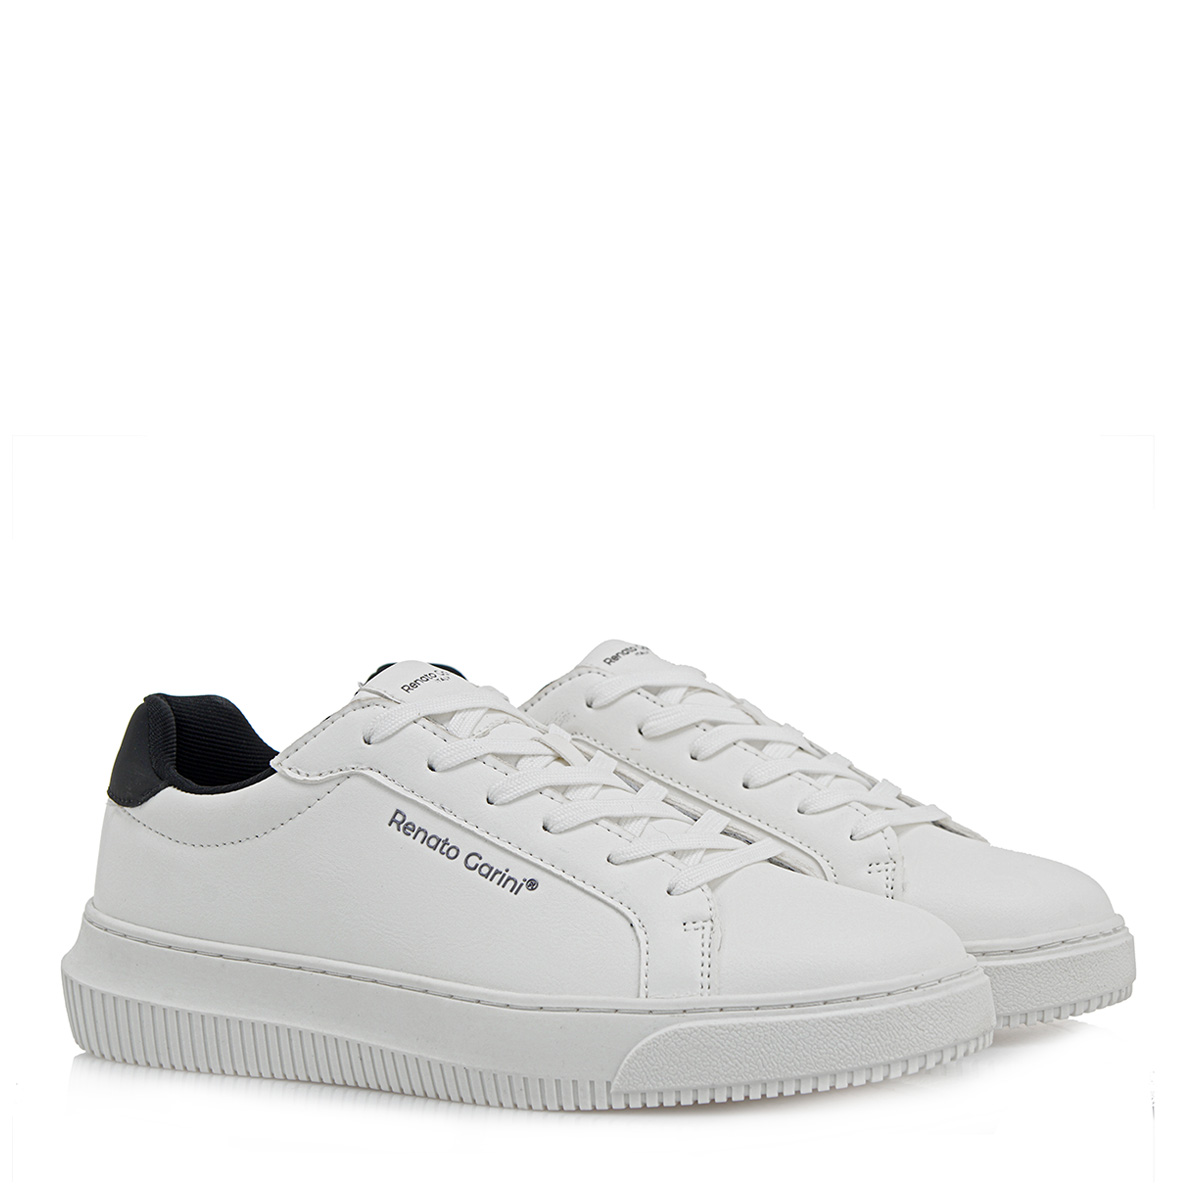 Ανδρικό Sneaker άσπρο Renato Garini  R565V0202483